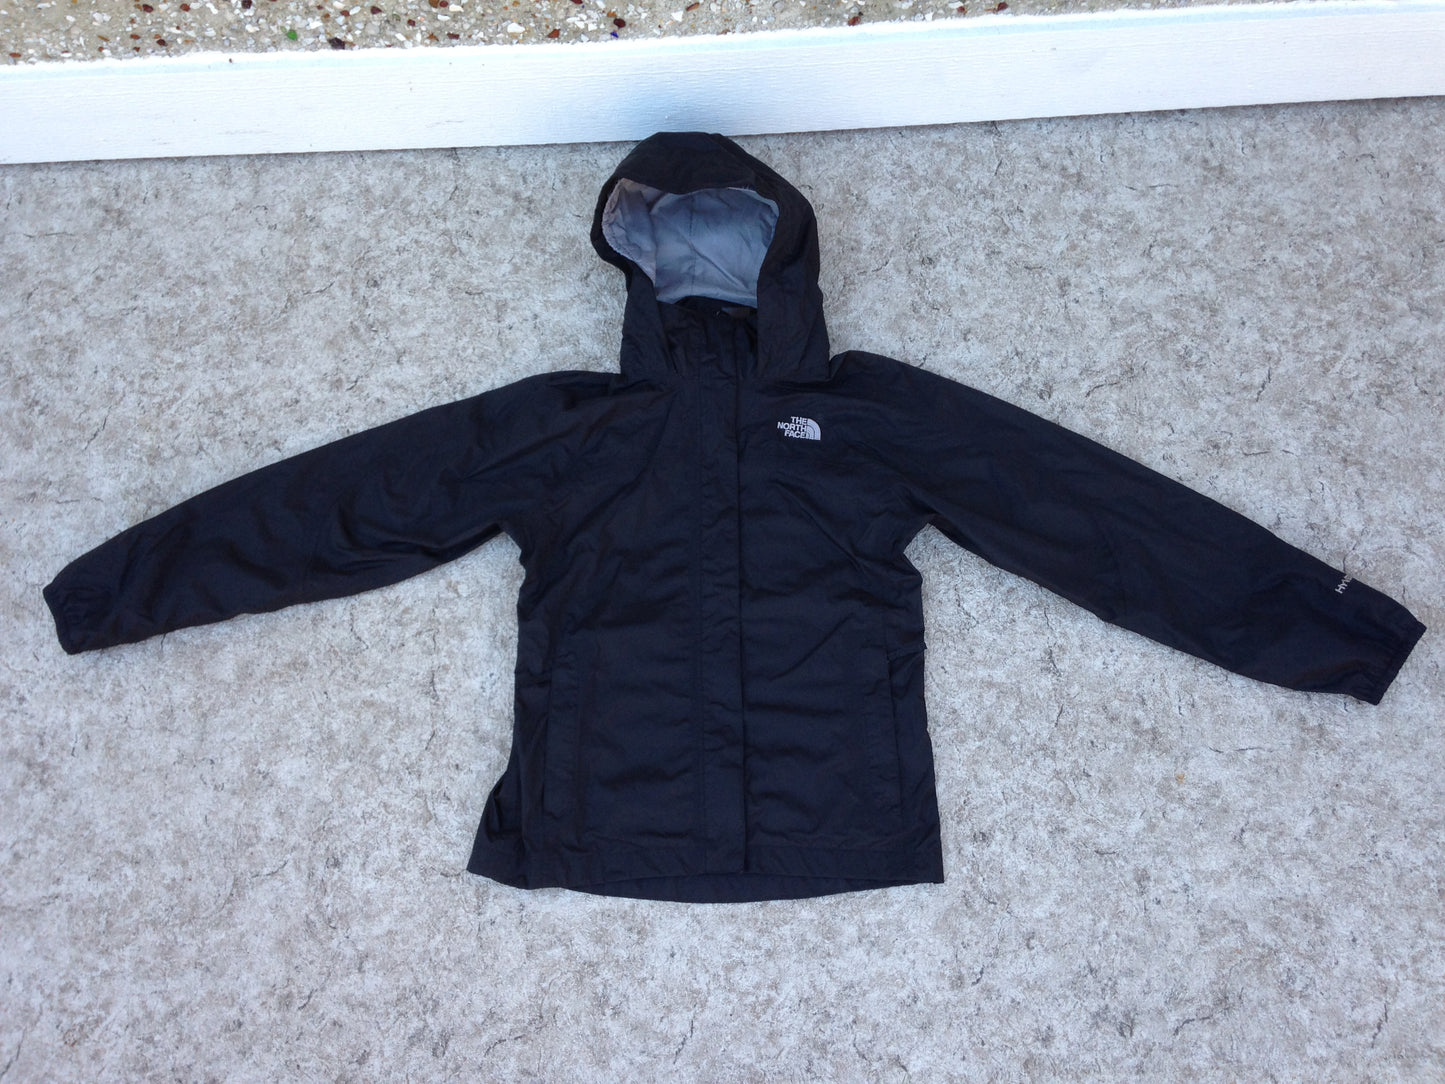 Rain Coat Child Size 10-12 The North Face Black Excellent